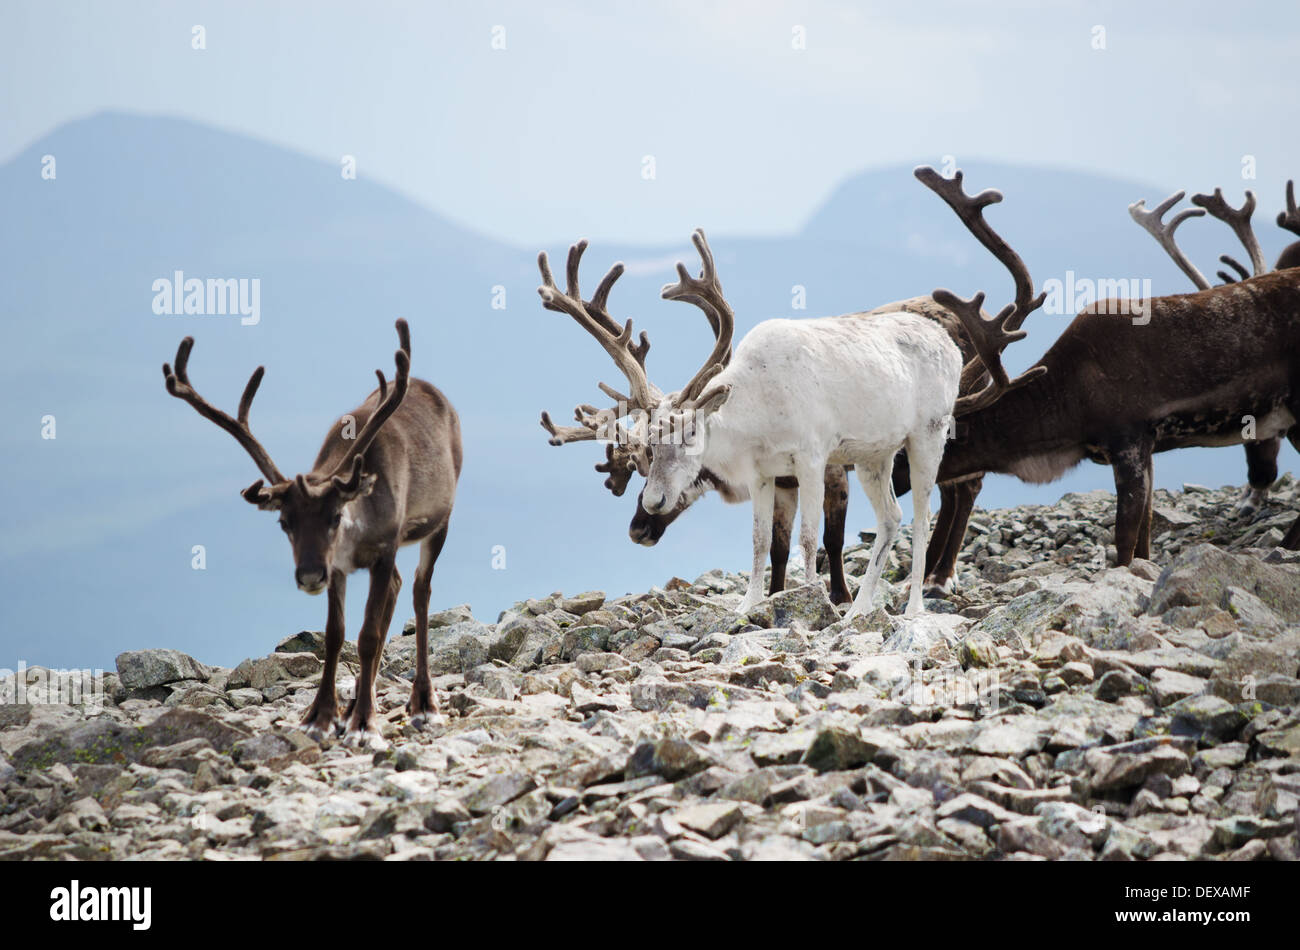 A herd of reindeer in Jotunheimen national park, Norway. Stock Photo